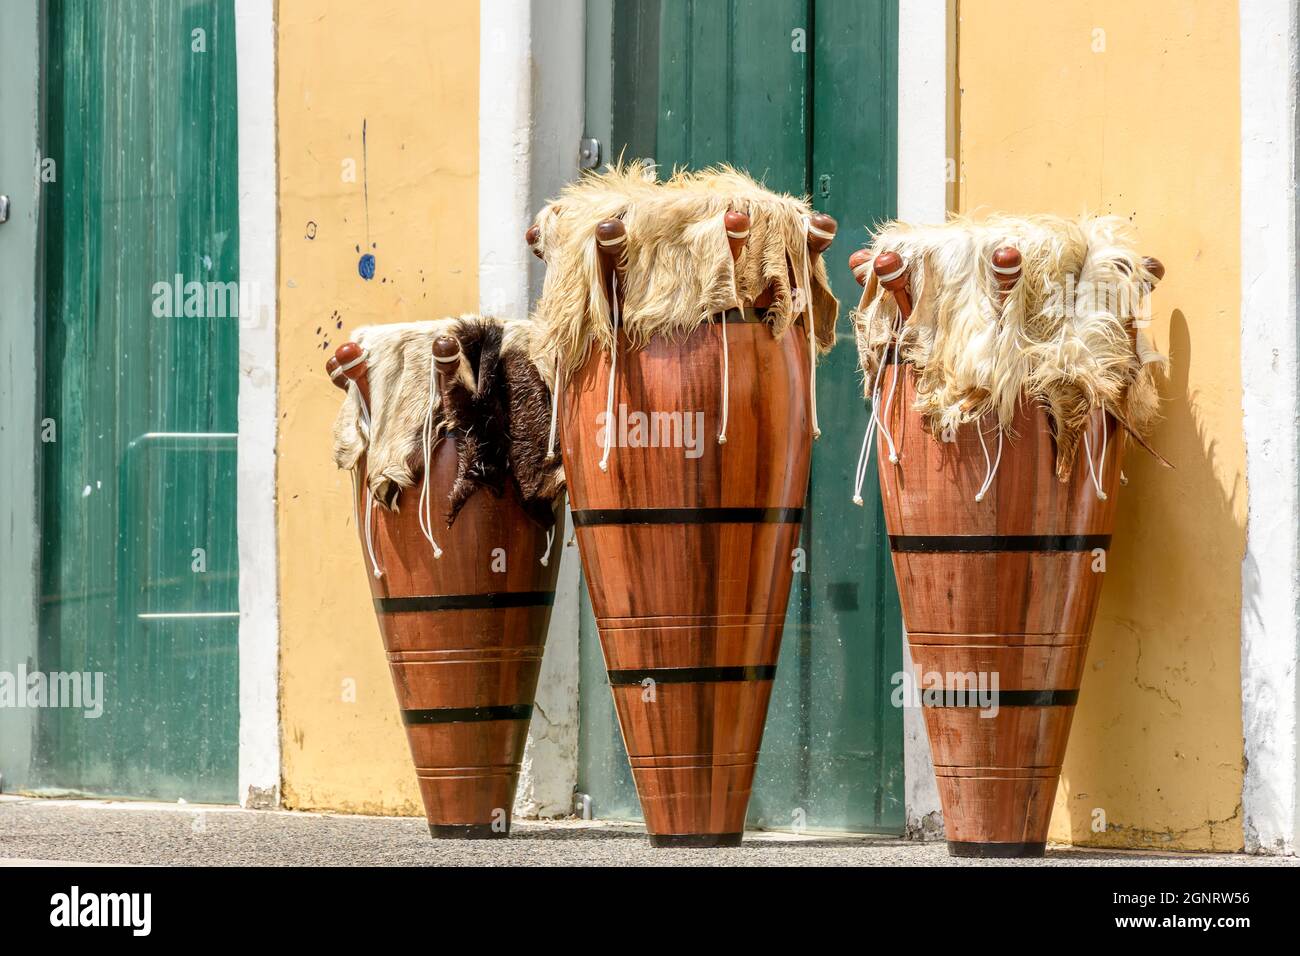 Ethnische und verzierte Trommeln werden in den Straßen von Pelourinhin, dem historischen Zentrum der Stadt Salvador in Bahia, auch als Atabaken bezeichnet Stockfoto